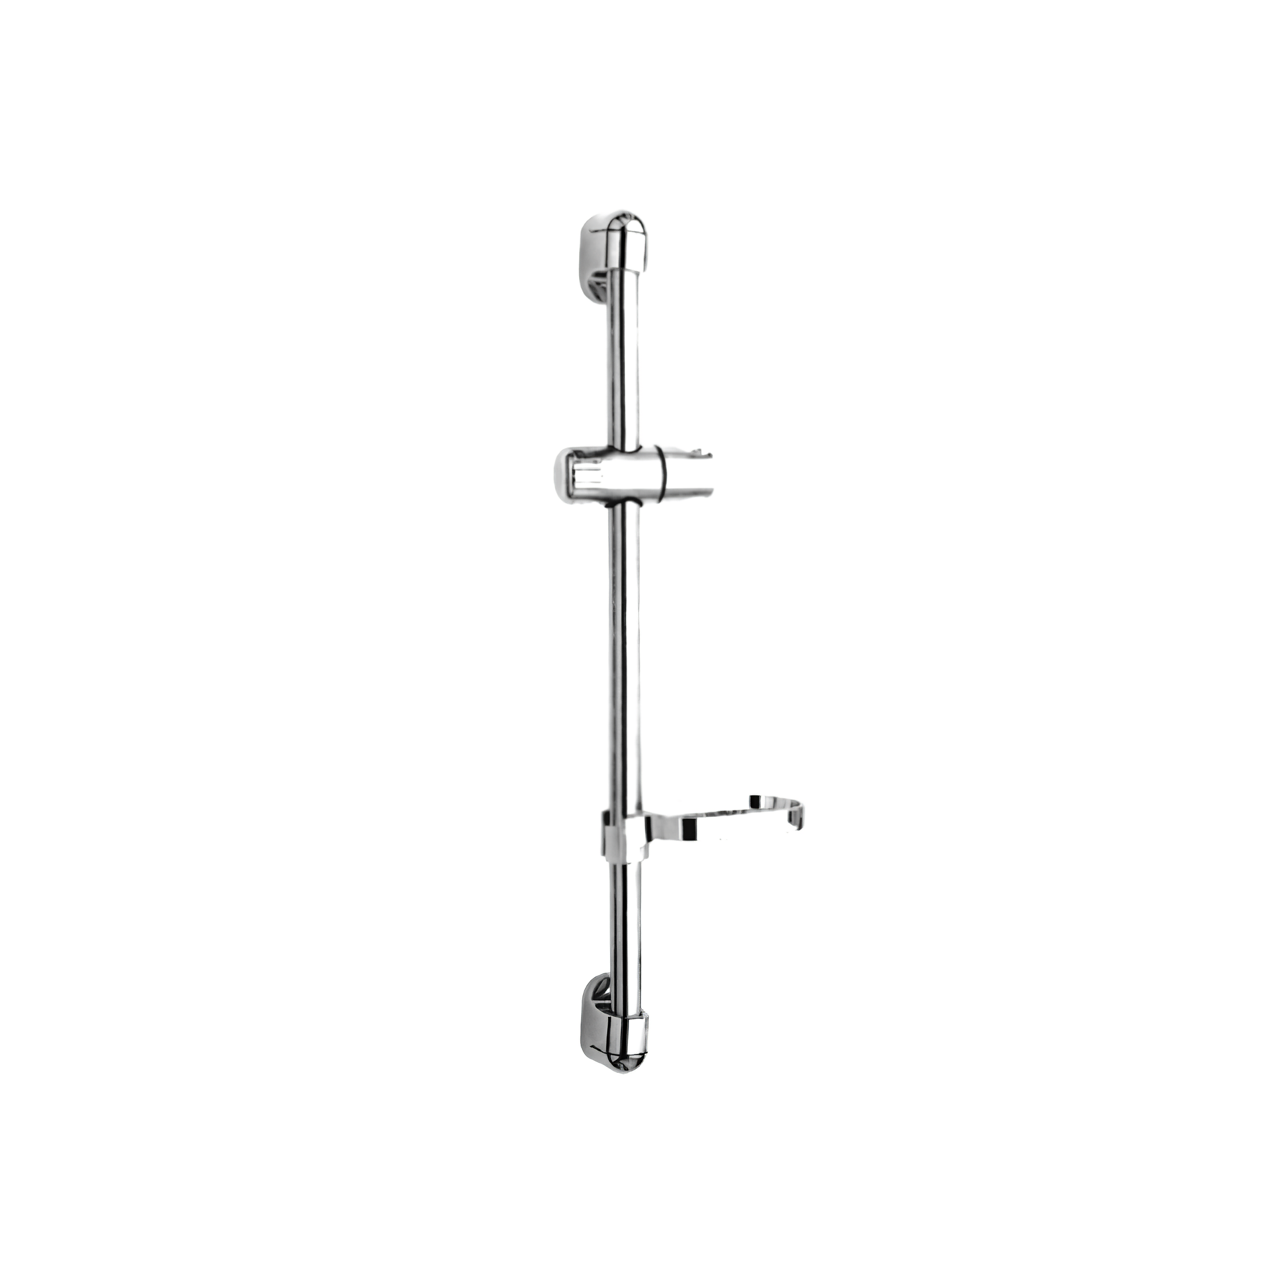 H112C Slide Bar ABS Plastic Height Adjustable Bathroom Slide Bar and Holder with Adjustable Handheld Shower Head Holder Shower Sliding Bar